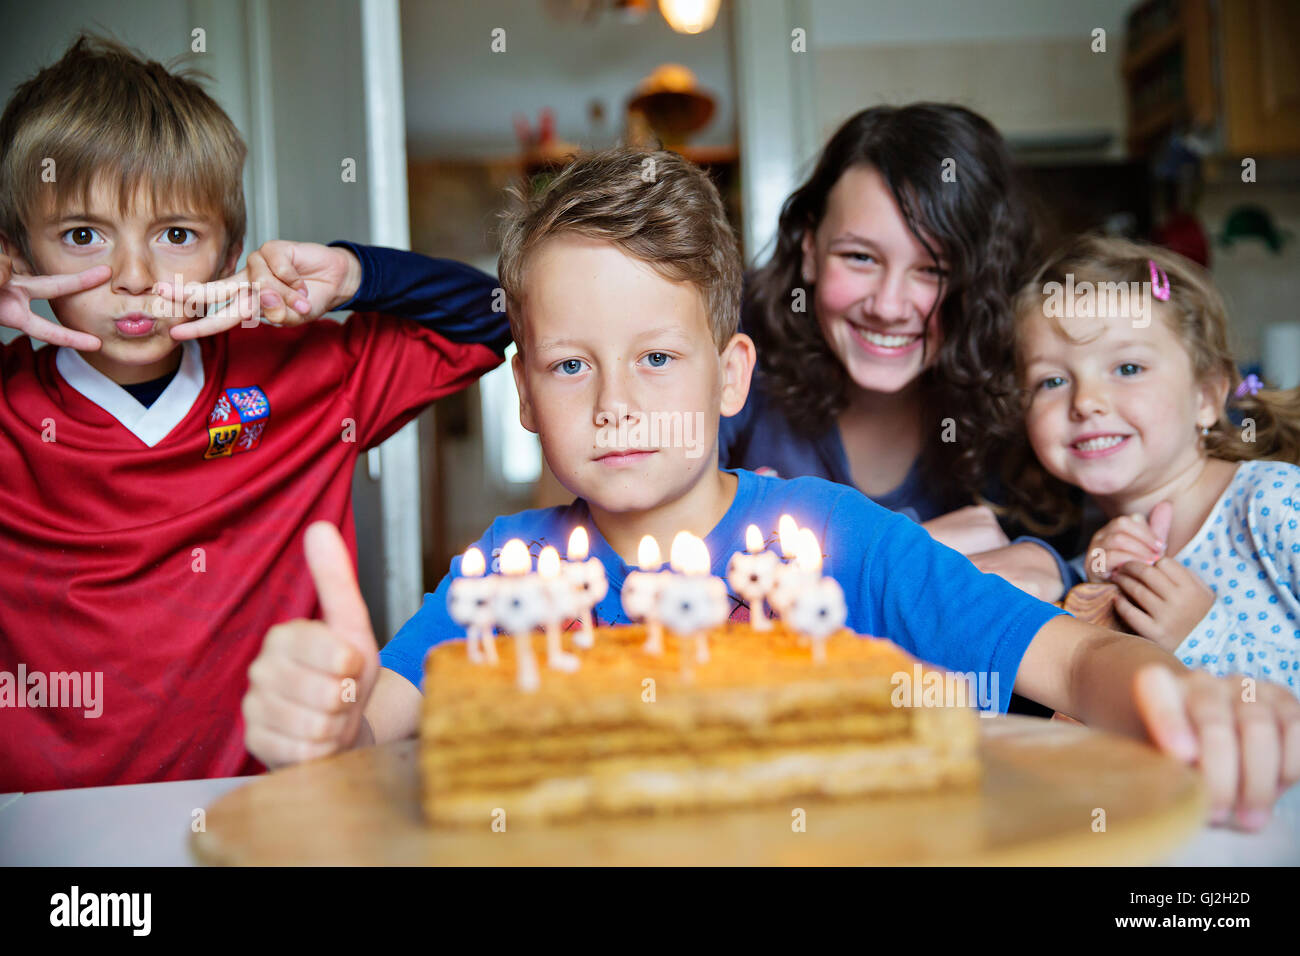 Festa di compleanno, party, candele, Marlenka torta, kid, ragazzi, bambini, bambini Foto Stock